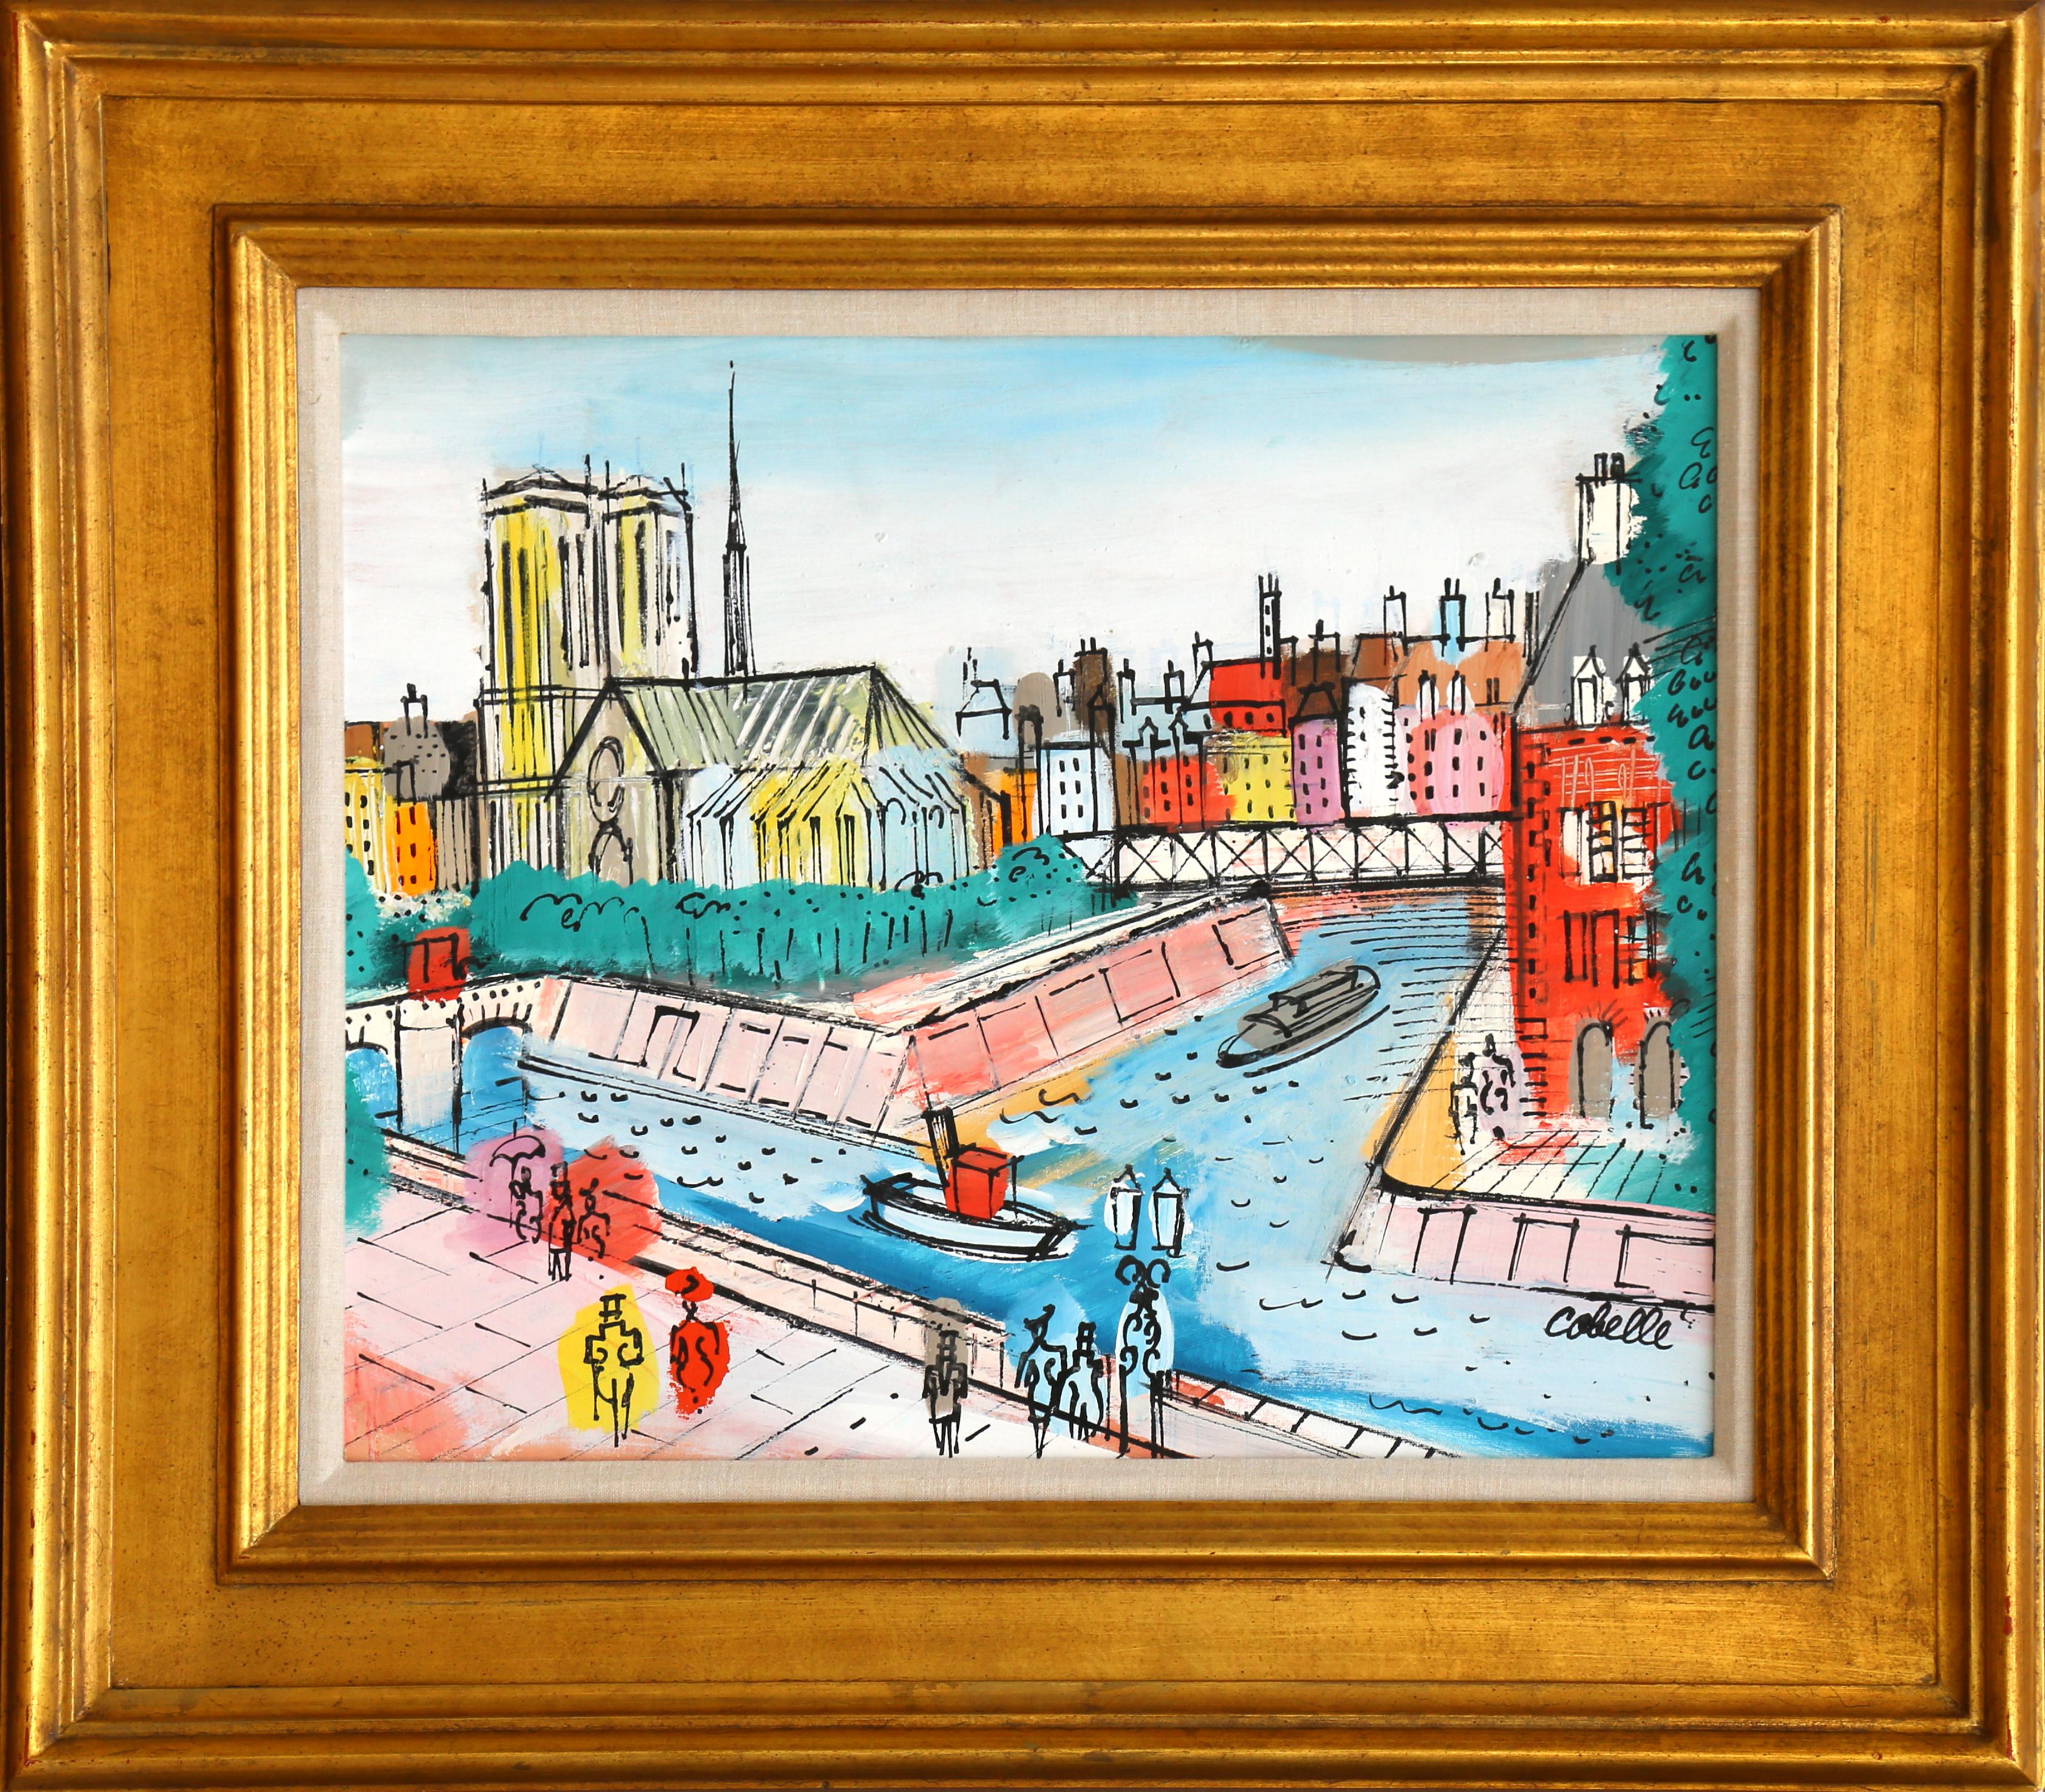 Artistics : Charles Cobelle, Français (1902 - 1994)
Titre : Notre Dame et les ponts
Année : vers 1960
Médium : Acrylique sur toile, signée à gauche.
Taille : 60,96 x 76,2 cm (24 x 30 in.)
Cadre : 29.5 x 34 pouces